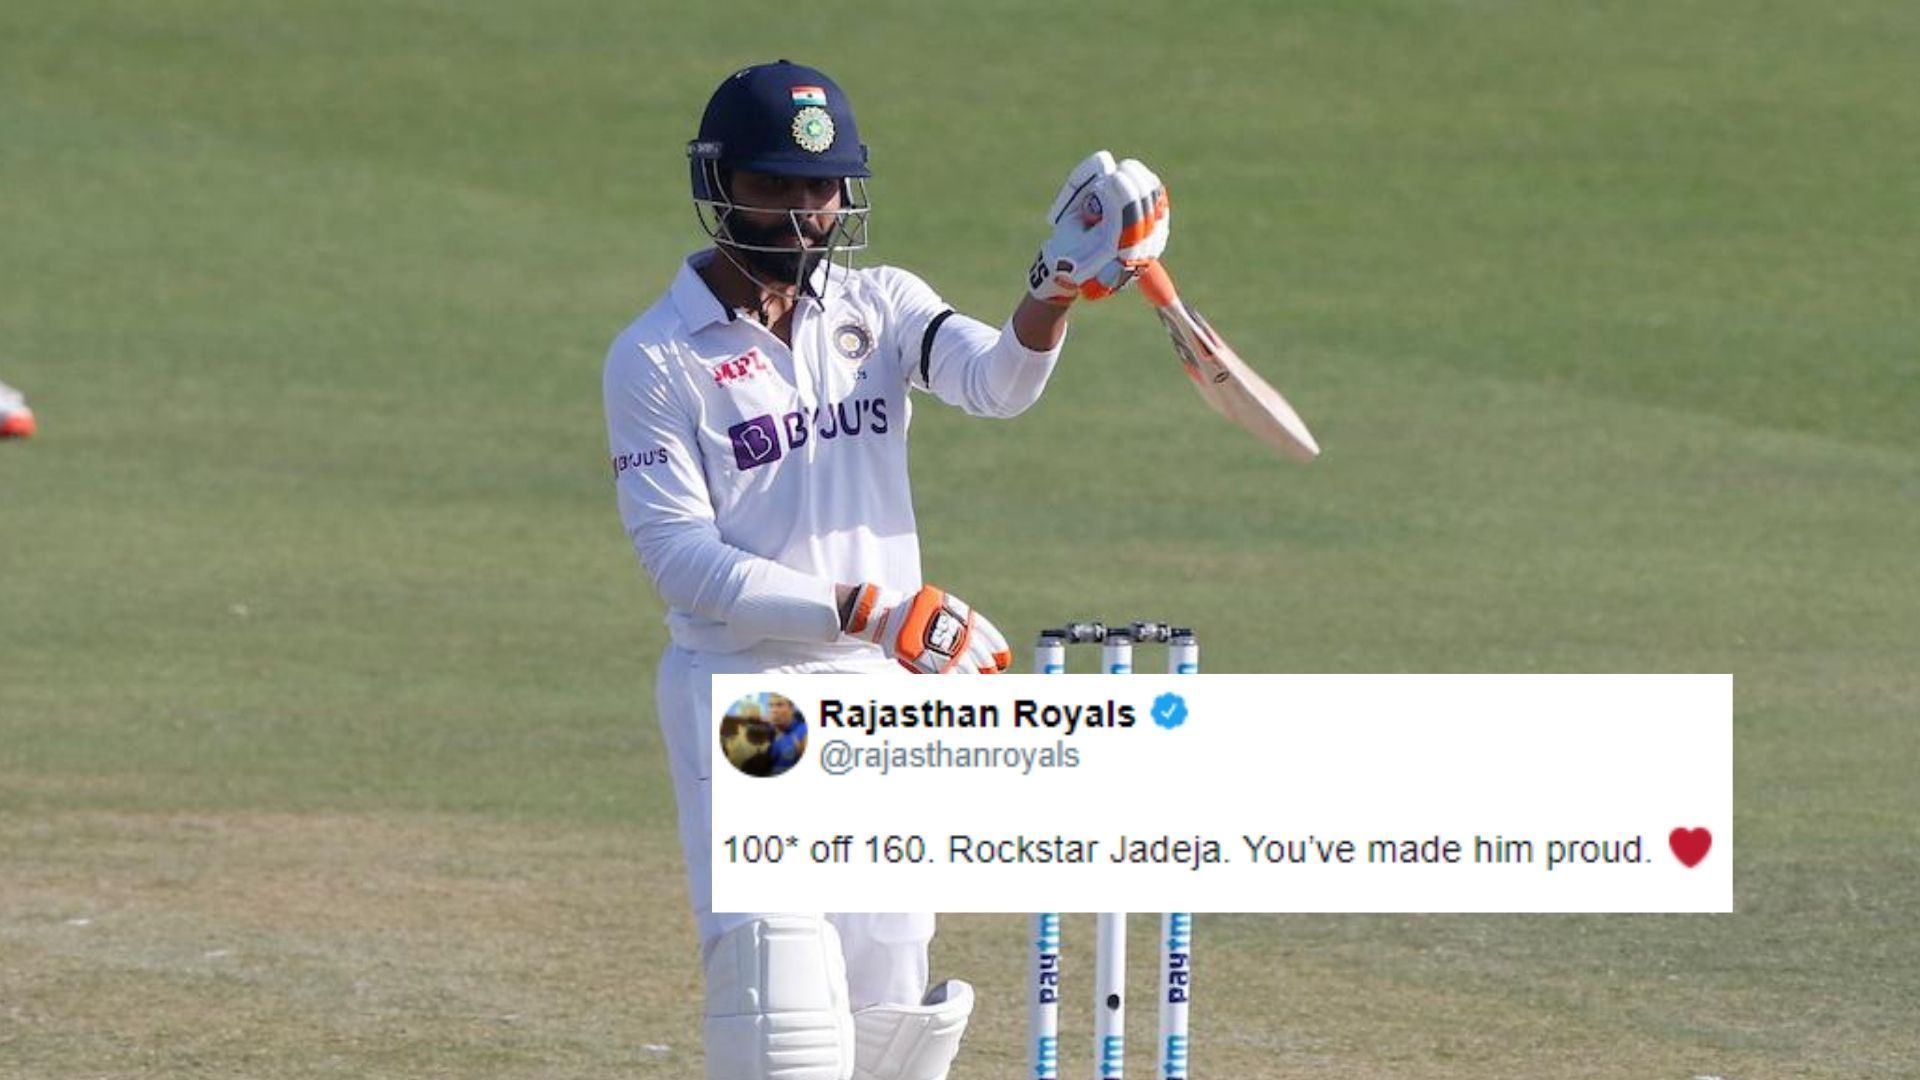 Ravindra Jadeja scored his second Test hundred on Saturday against Sri Lanka.